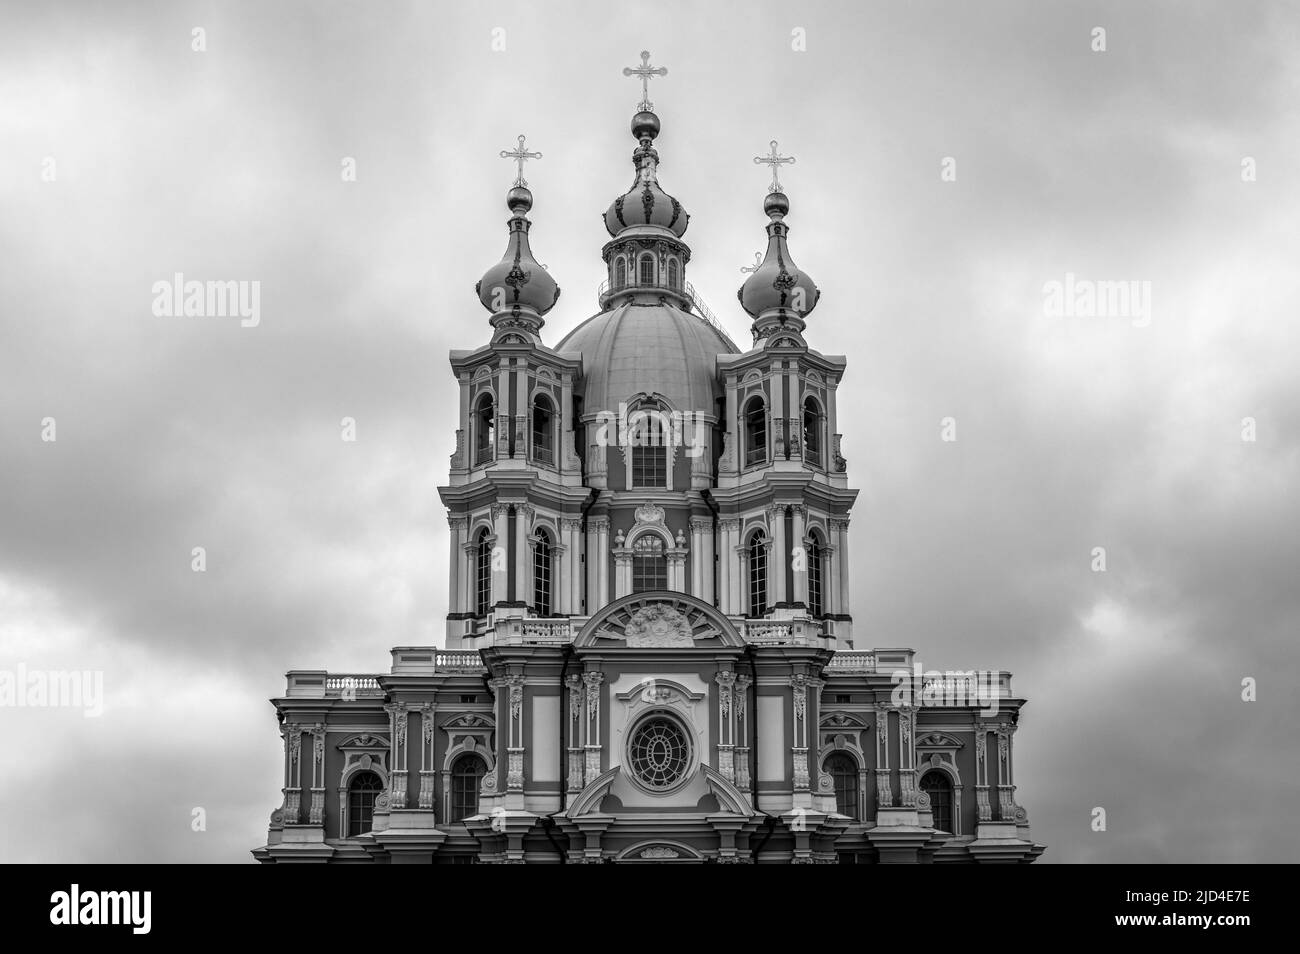 Couvent de Smolny de la Résurrection contre ciel nuageux. Saint-Pétersbourg, Russie. Noir et blanc. Banque D'Images